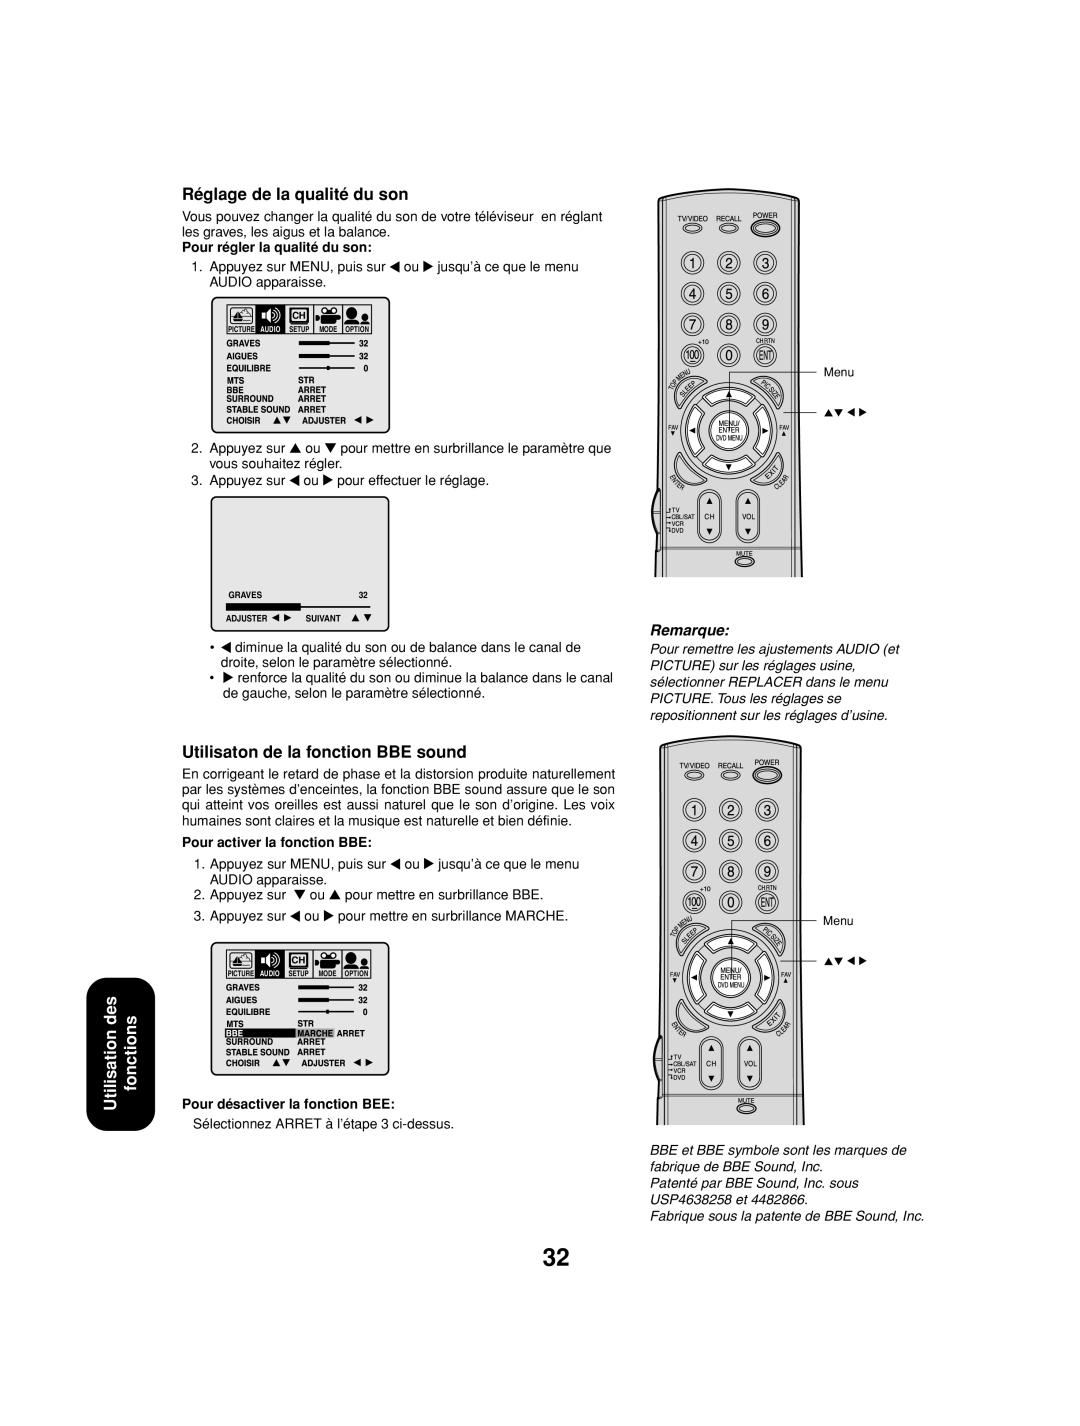 Toshiba 27AF53 appendix Réglage de la qualité du son, Utilisaton de la fonction BBE sound, Pour régler la qualité du son 